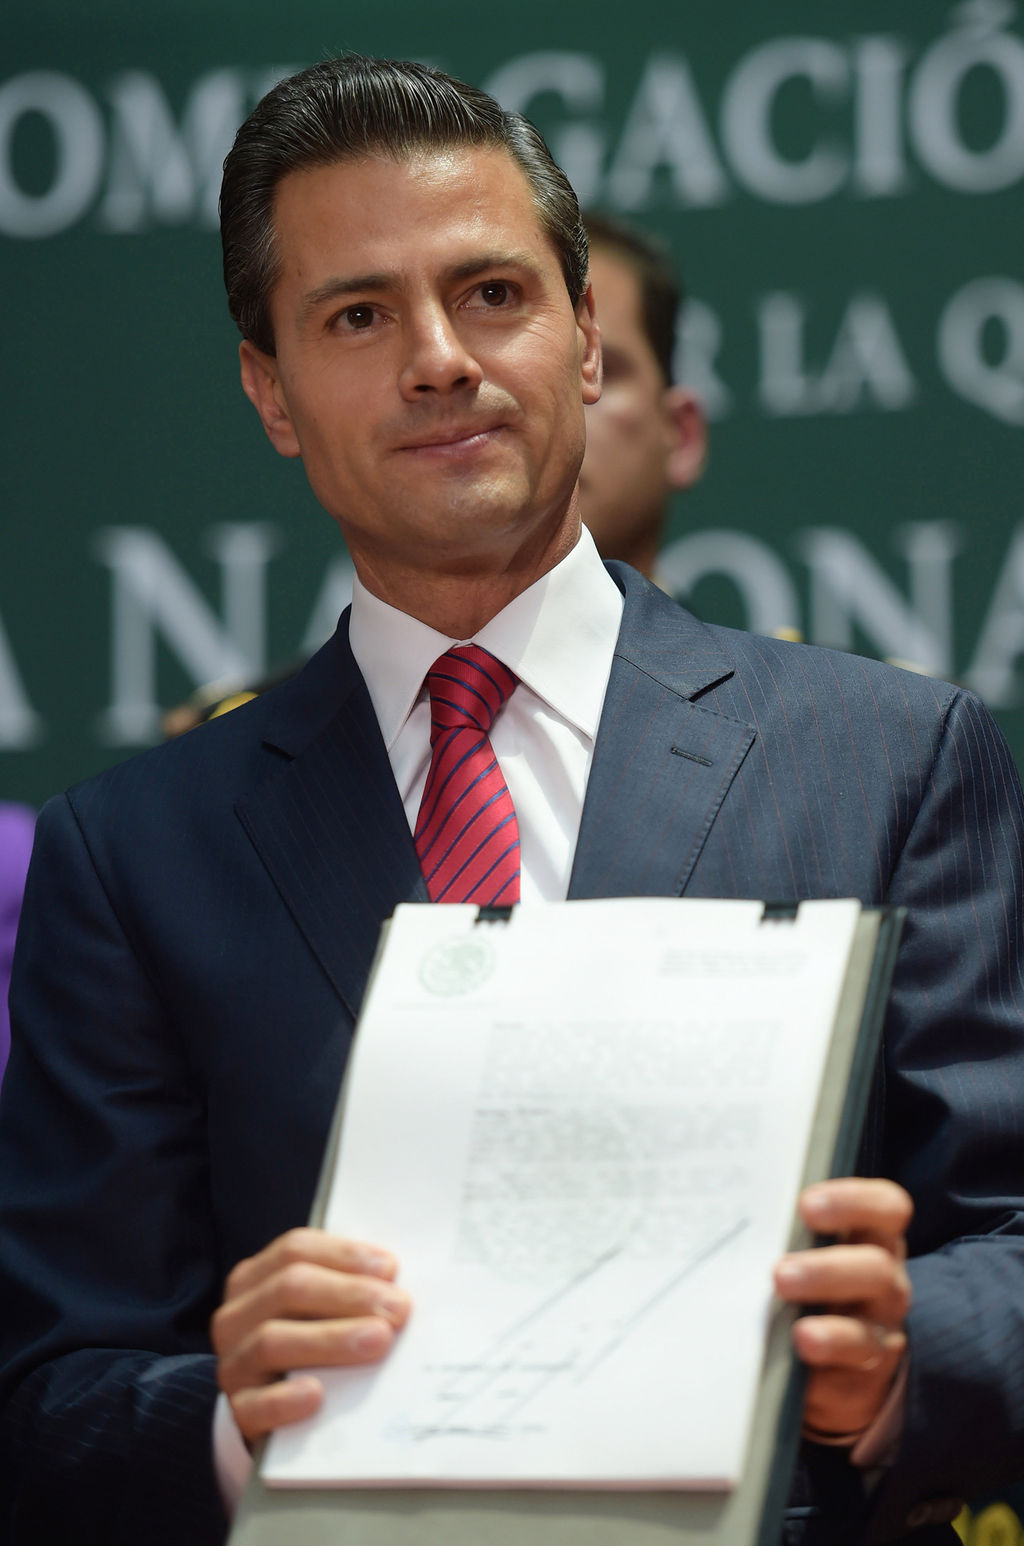 Problemas. El presidente Peña habría cometido irregularidades según Reuters.